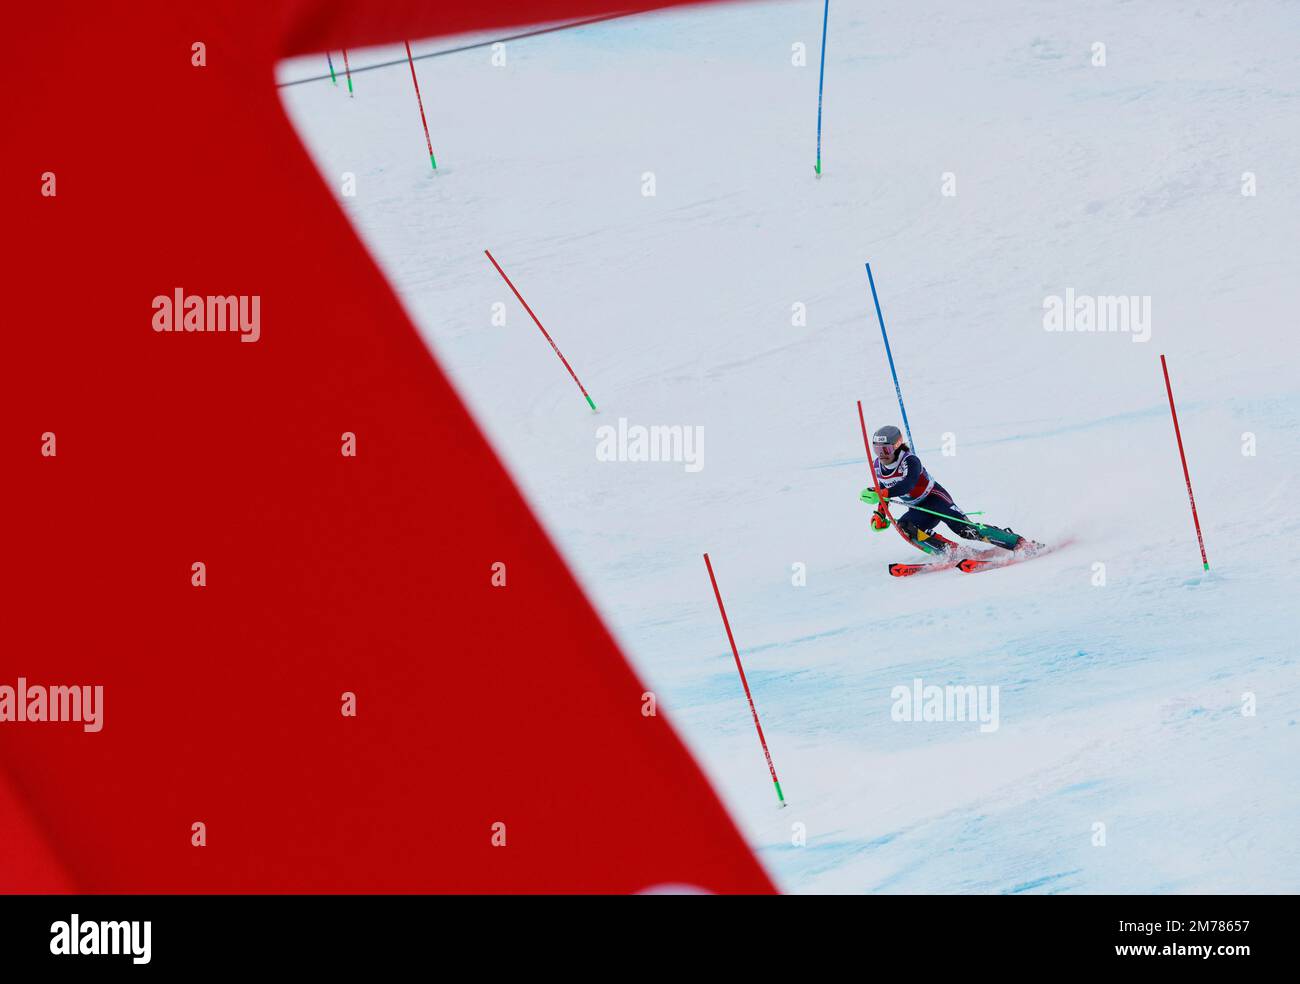 Ski alpin - FIS coupe du monde de ski alpin - Slalom masculin - Adelboden, Suisse - 8 janvier 2023 Lucas Braathen Norvège en action REUTERS/Stefan Wermuth Banque D'Images